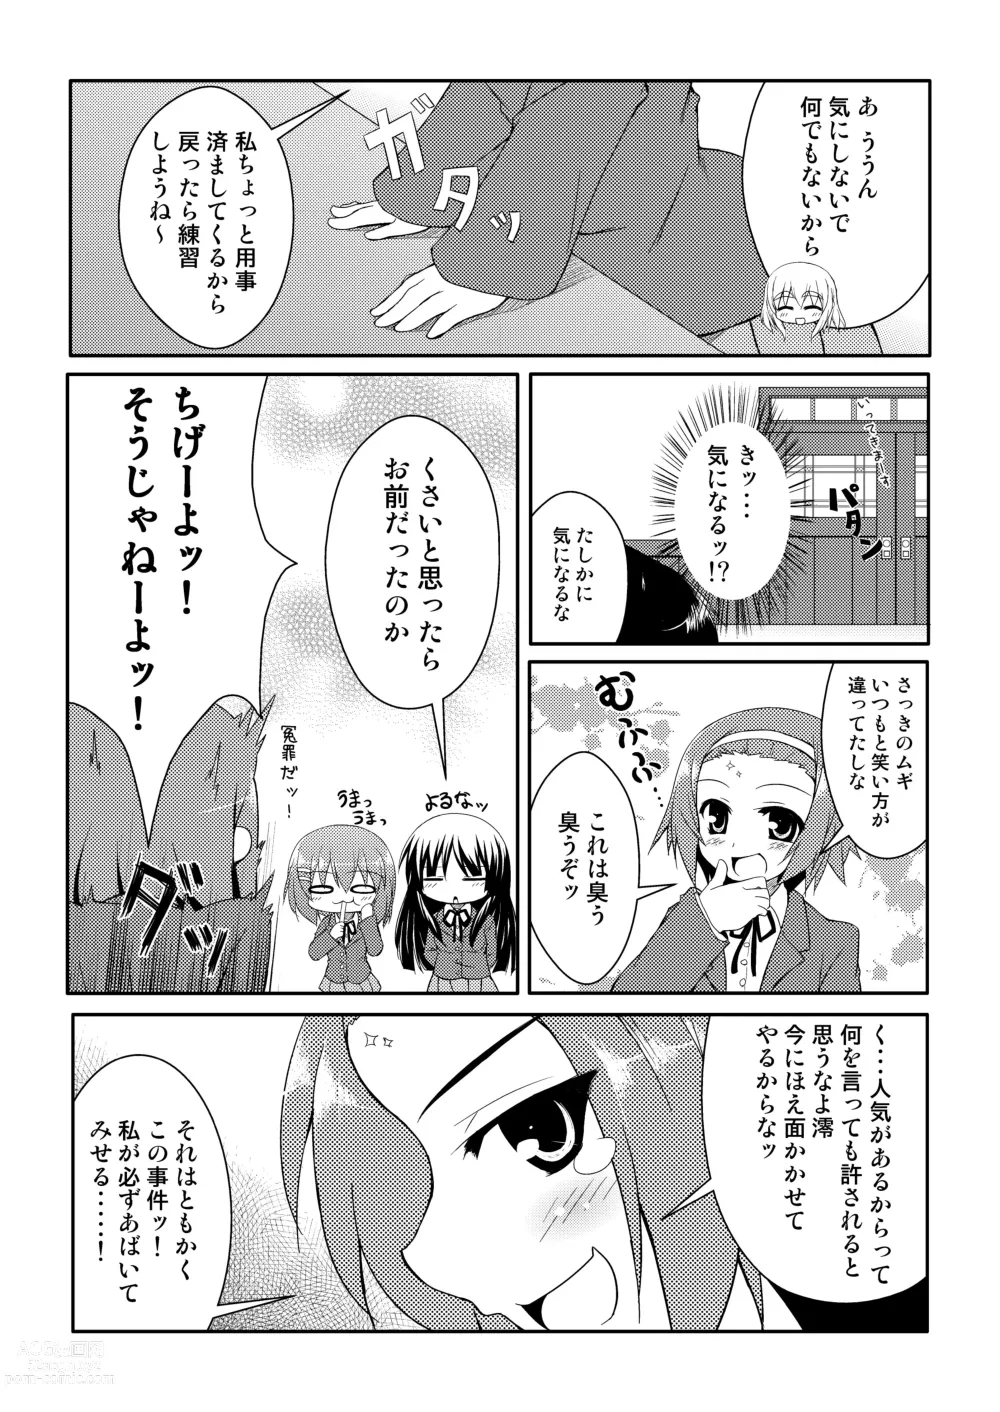 Page 6 of doujinshi Youjou Zensen Katsudouchuu!